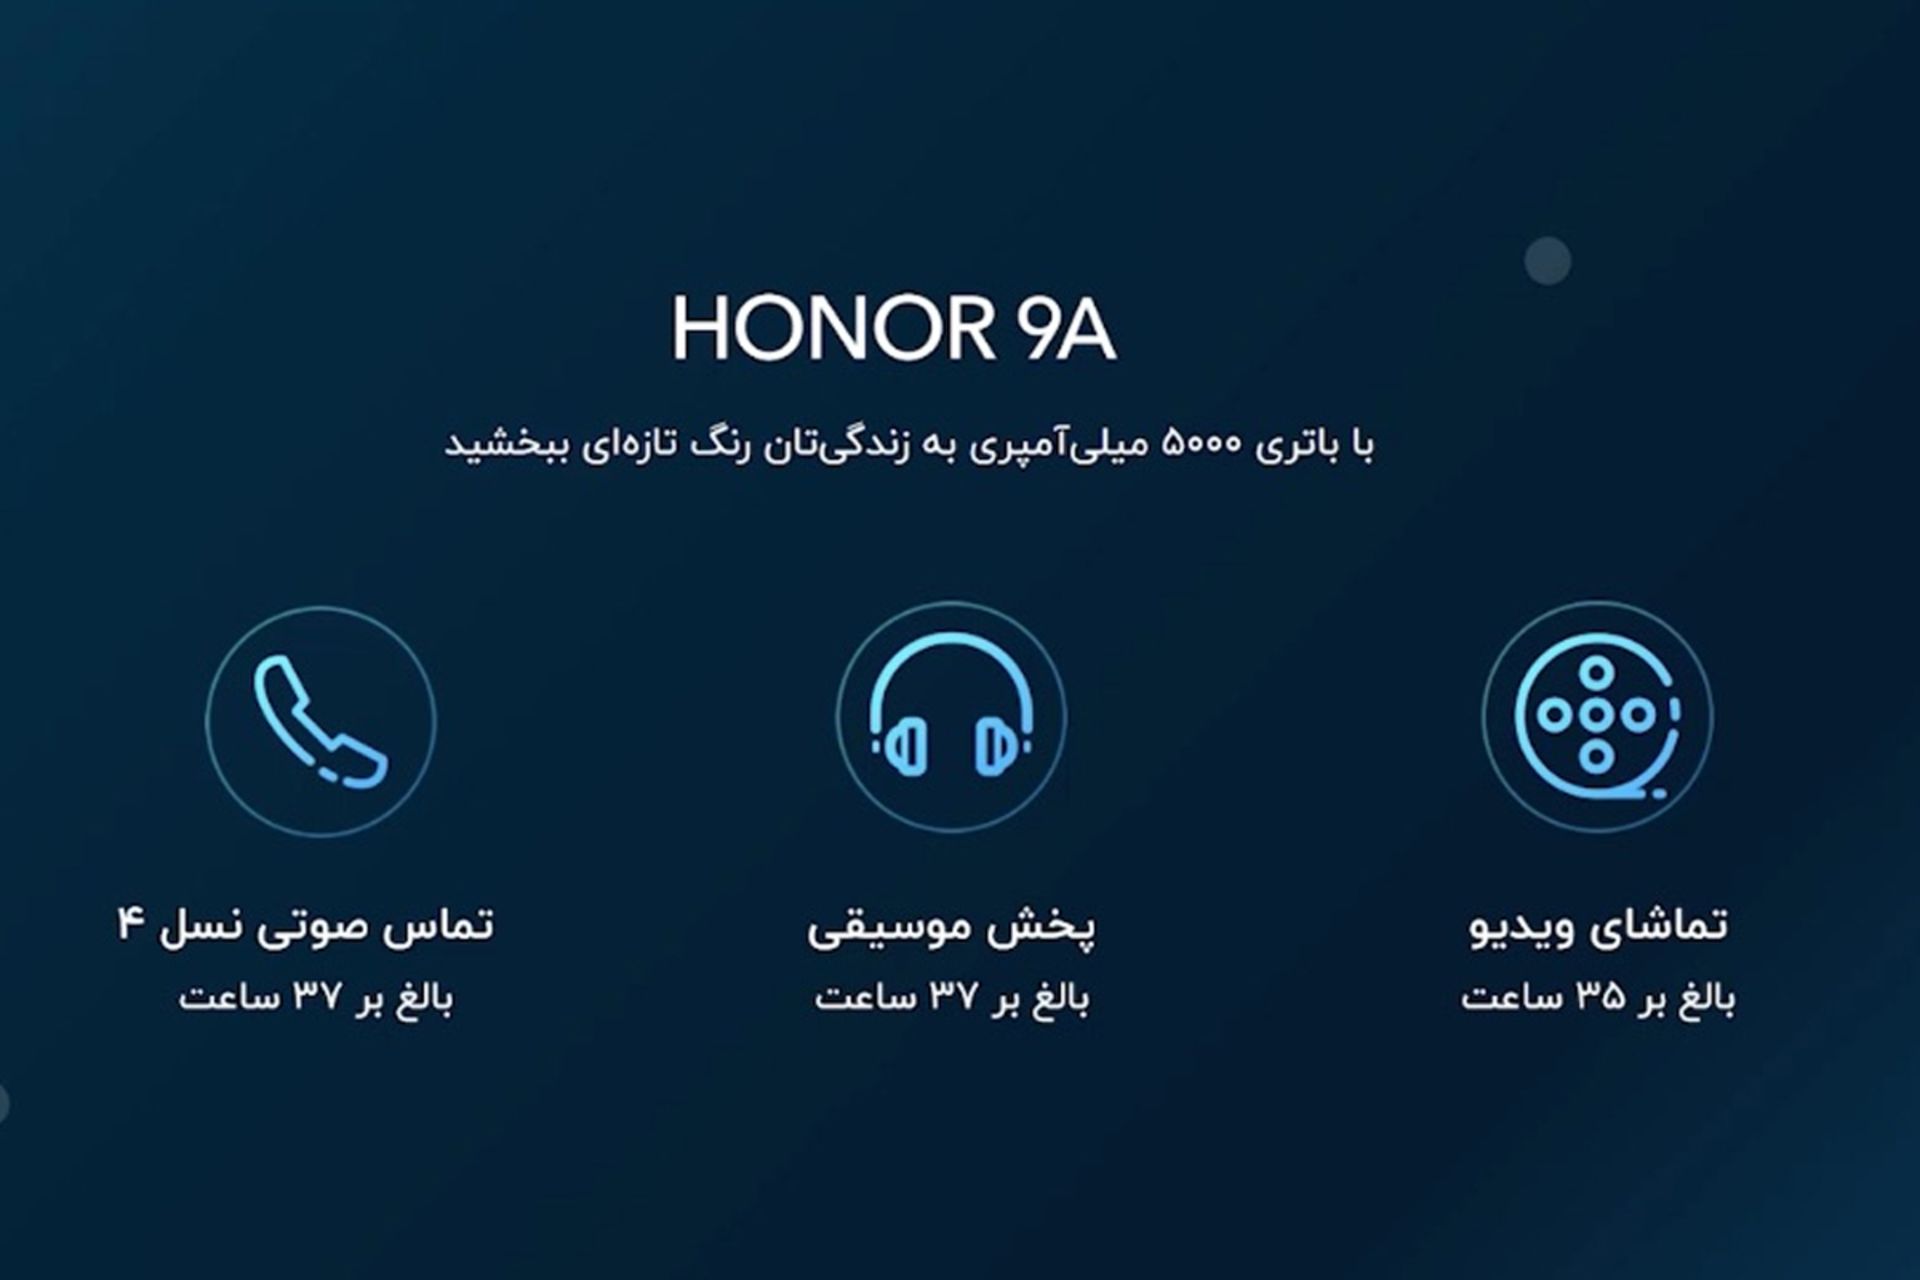 اسلاید مشخصات آنر ۹ ای در مراسم رونمایی آنر 9A در ایران